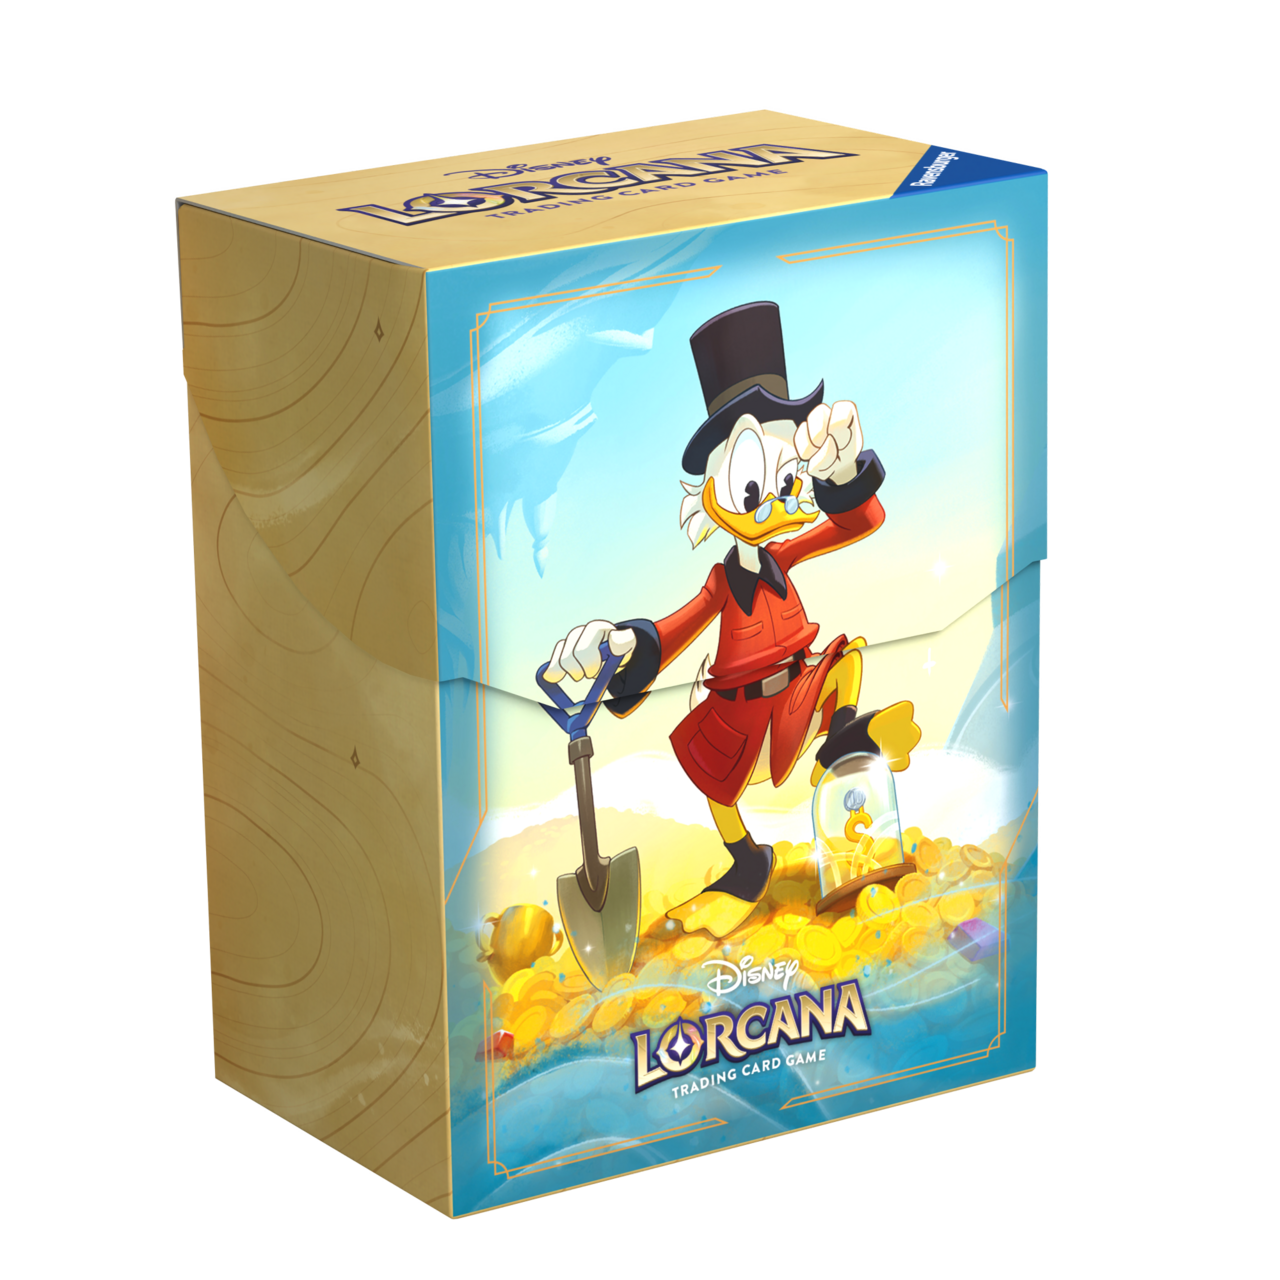 Disney Lorcana - Deckbox Dagobert Duck